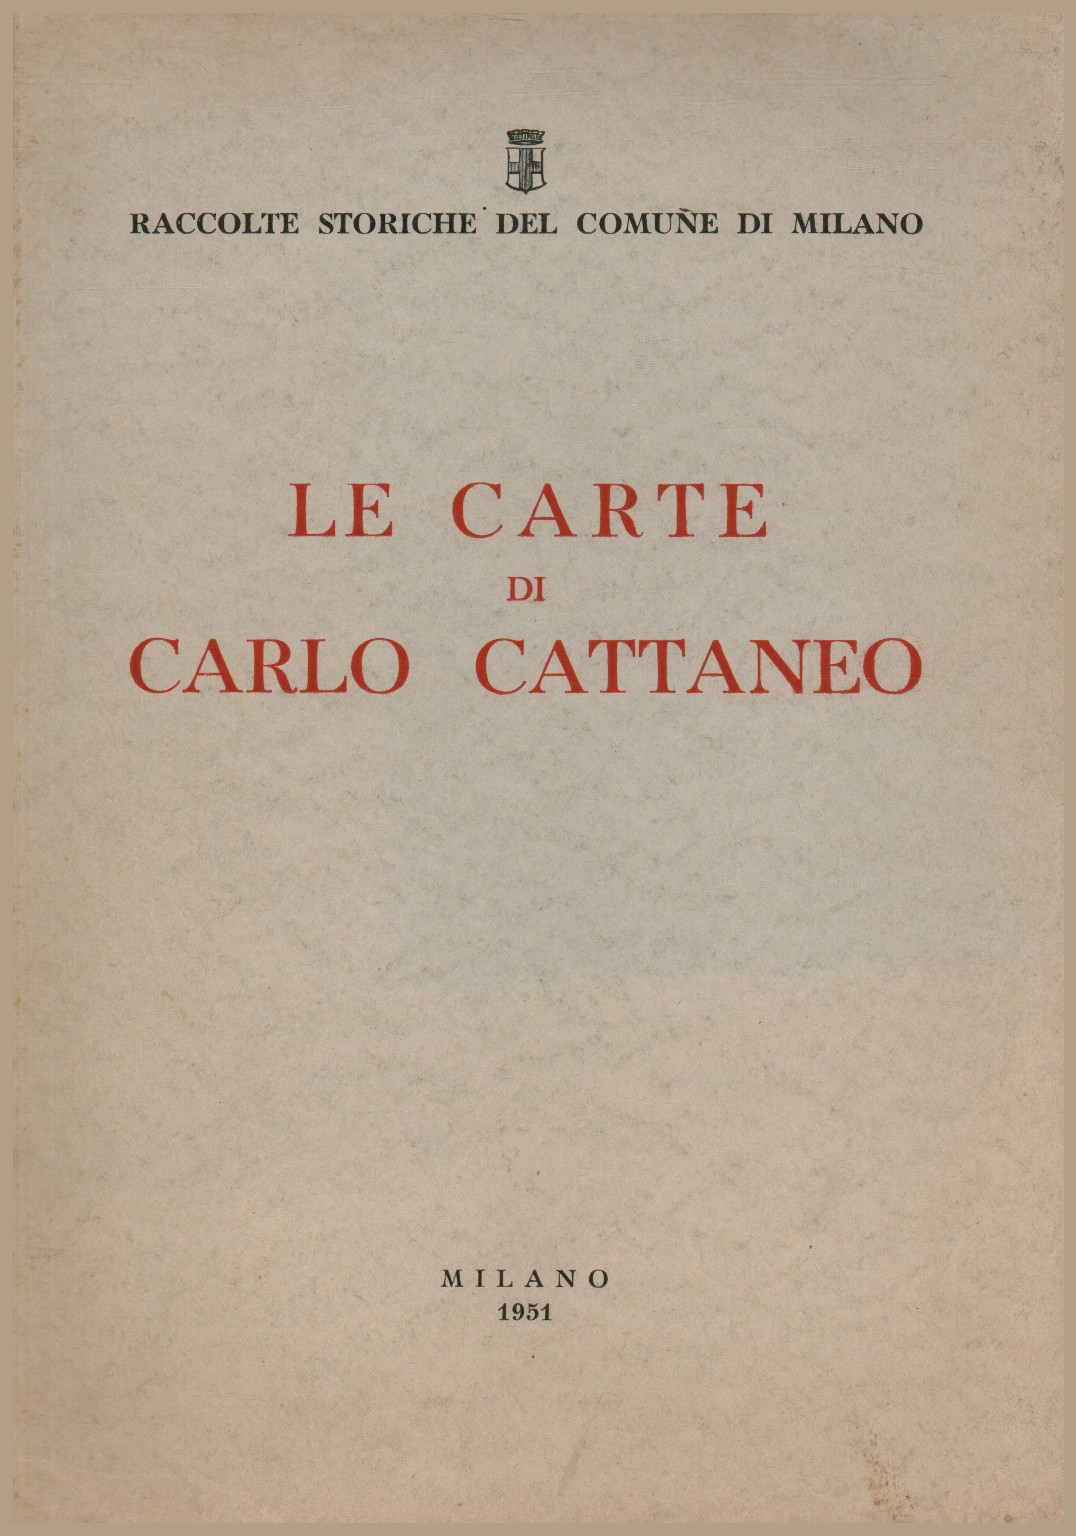 Las Tarjetas de Carlo Cattaneo, s.una.